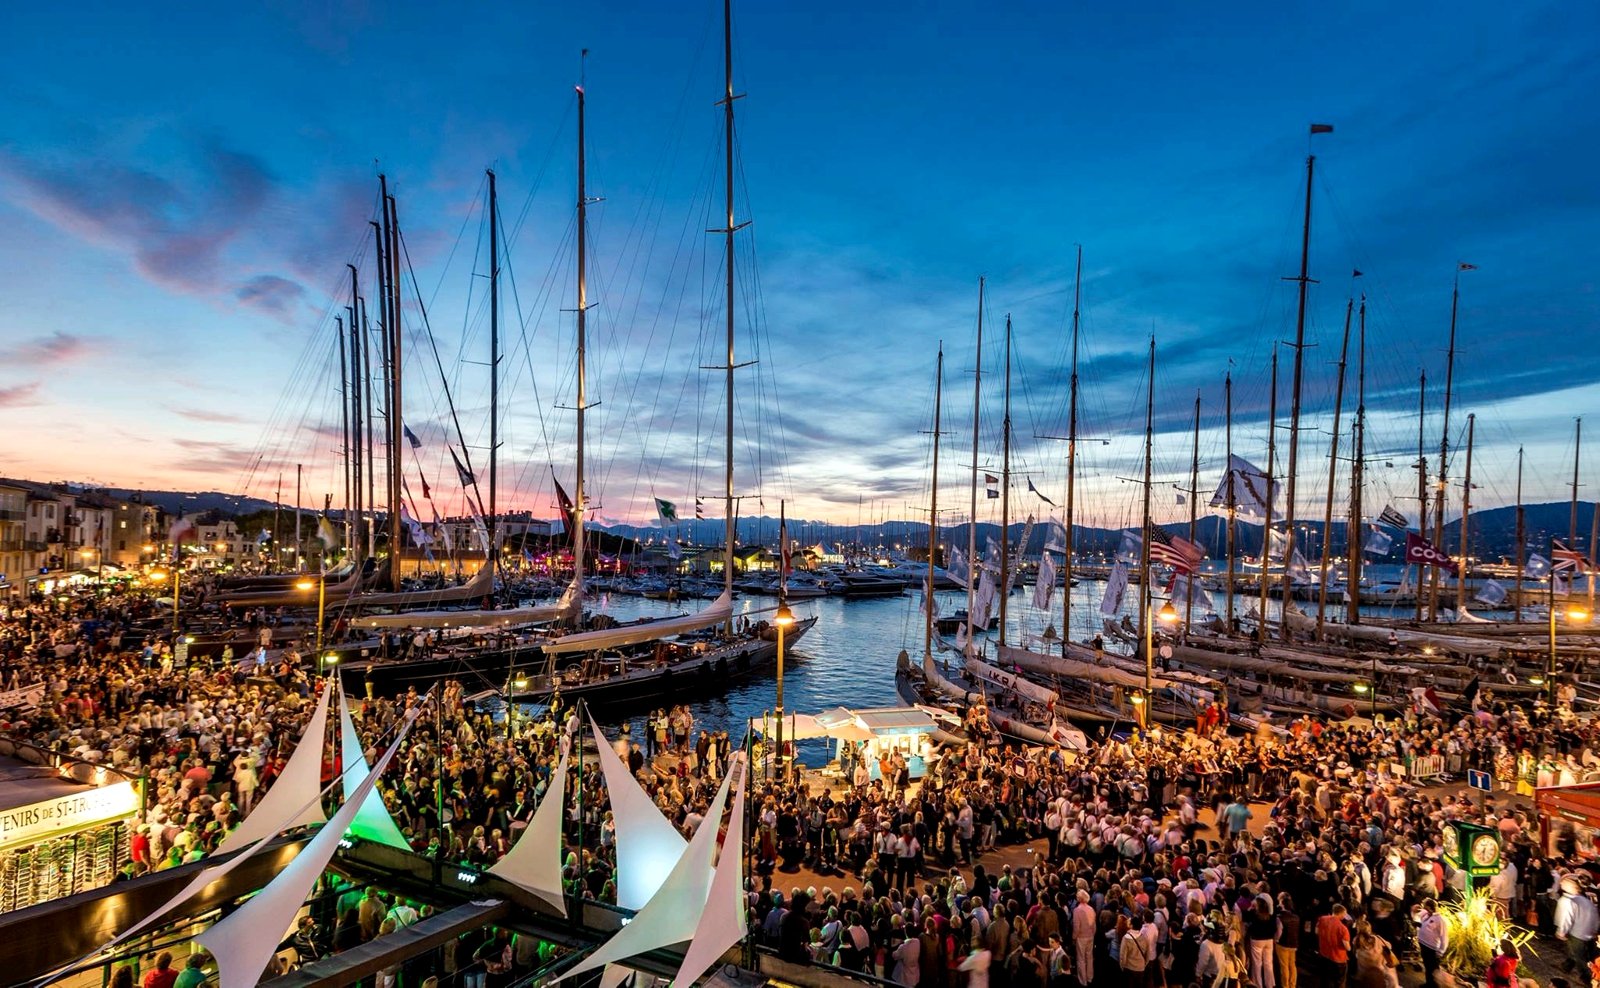 How to participate in the regatta in Saint-Tropez